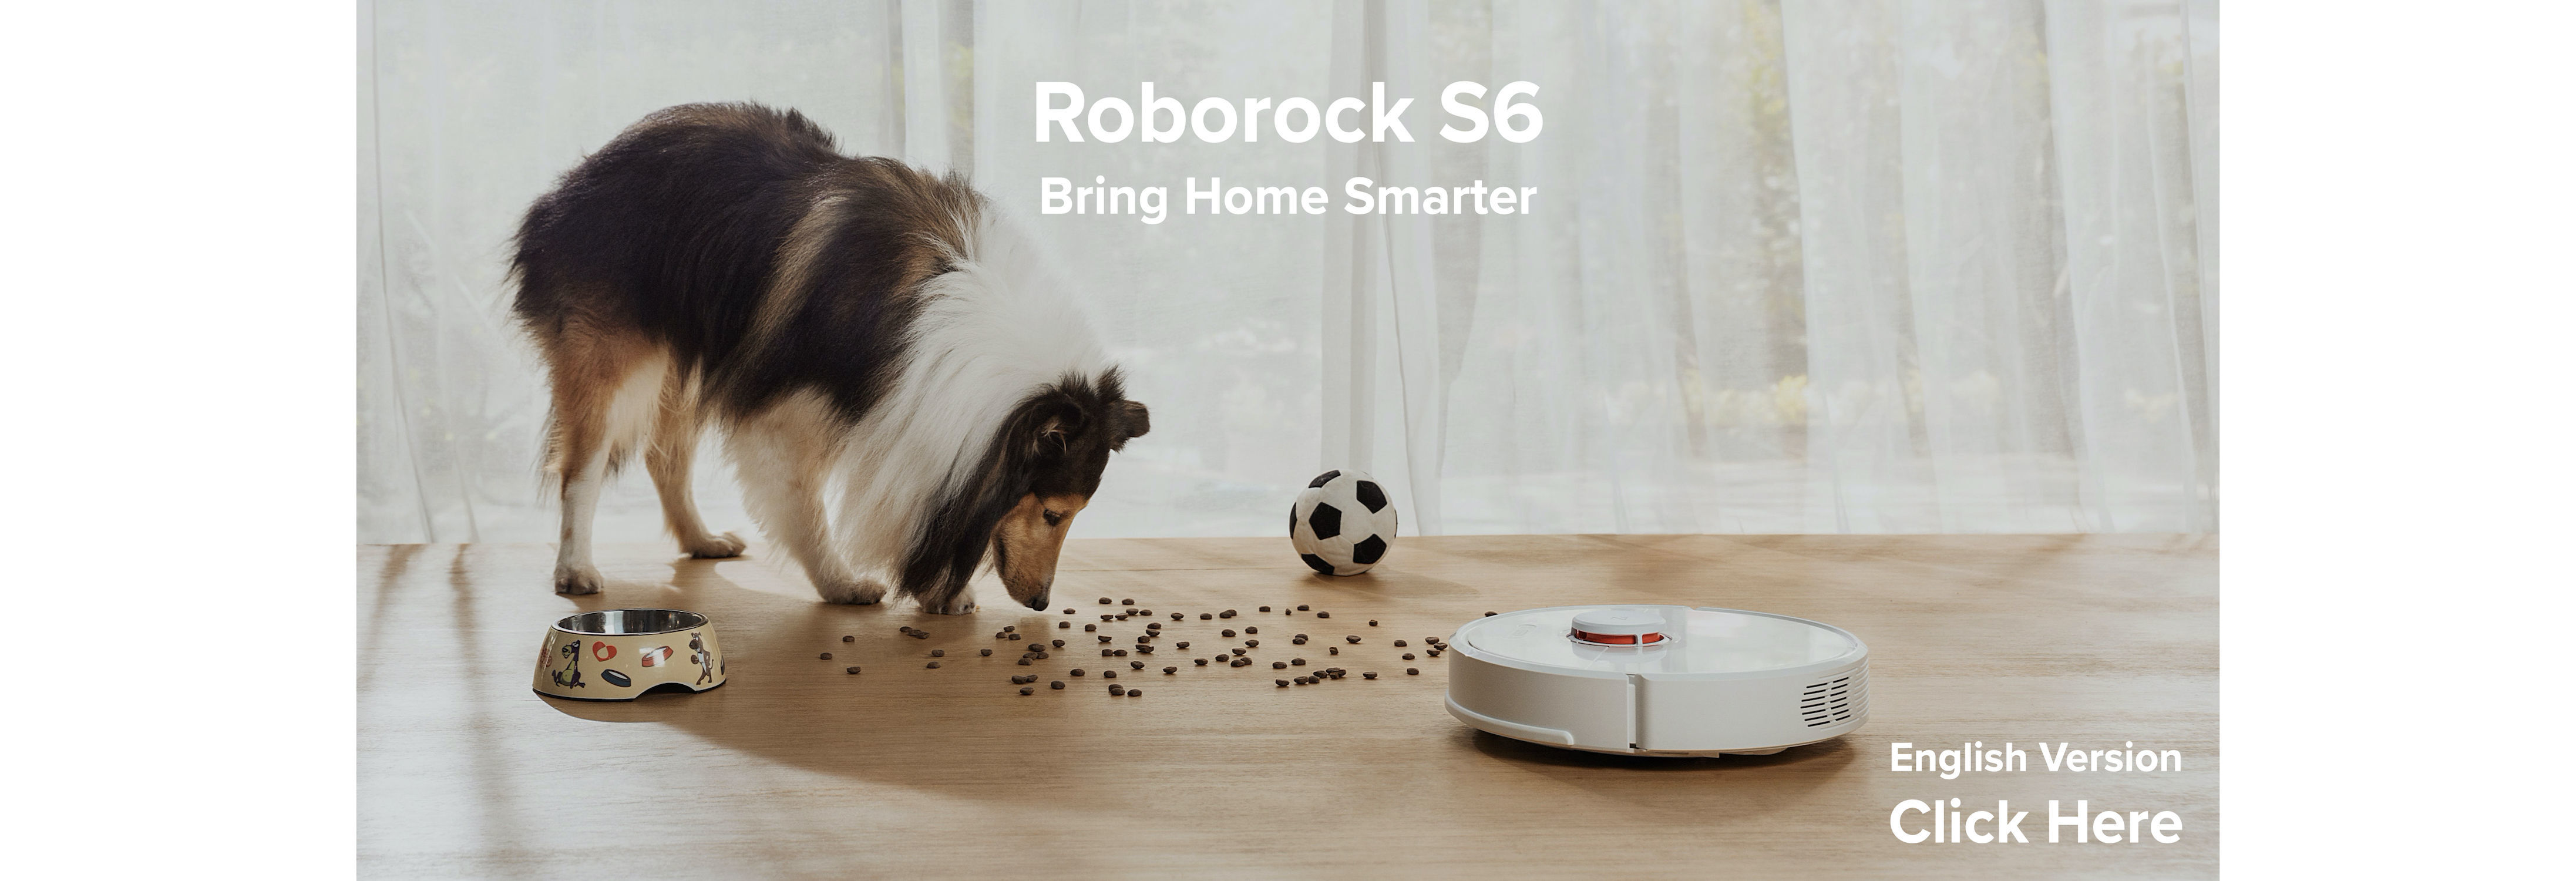 หุ่นยนต์ดูดฝุ่น ถูพื้น อัจฉริยะ โรโบร็อค Roborock S6 - Smart Robotic Vacuum and Mop Cleaner - Bring 